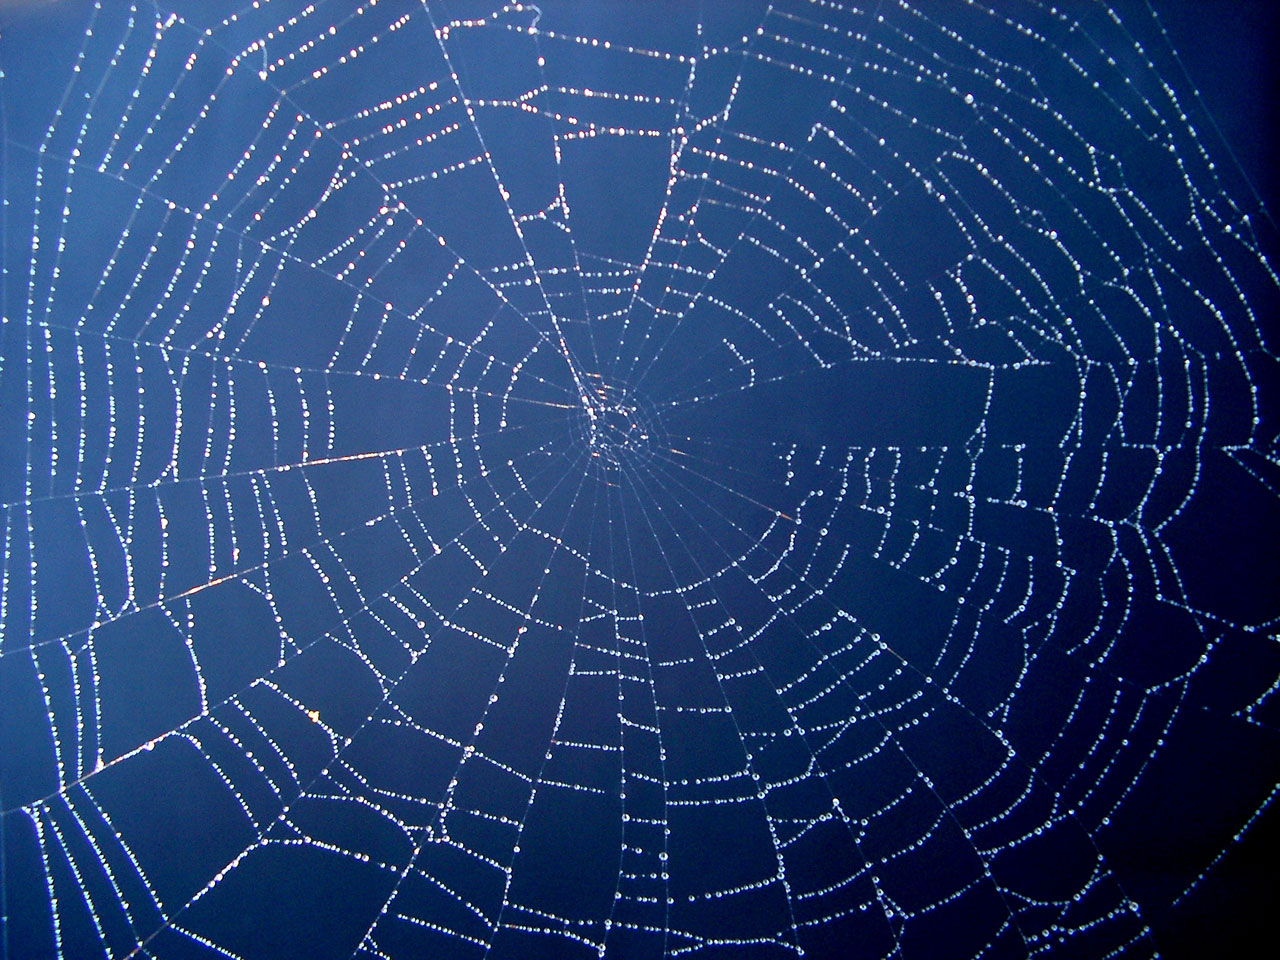 Deep Dark Web